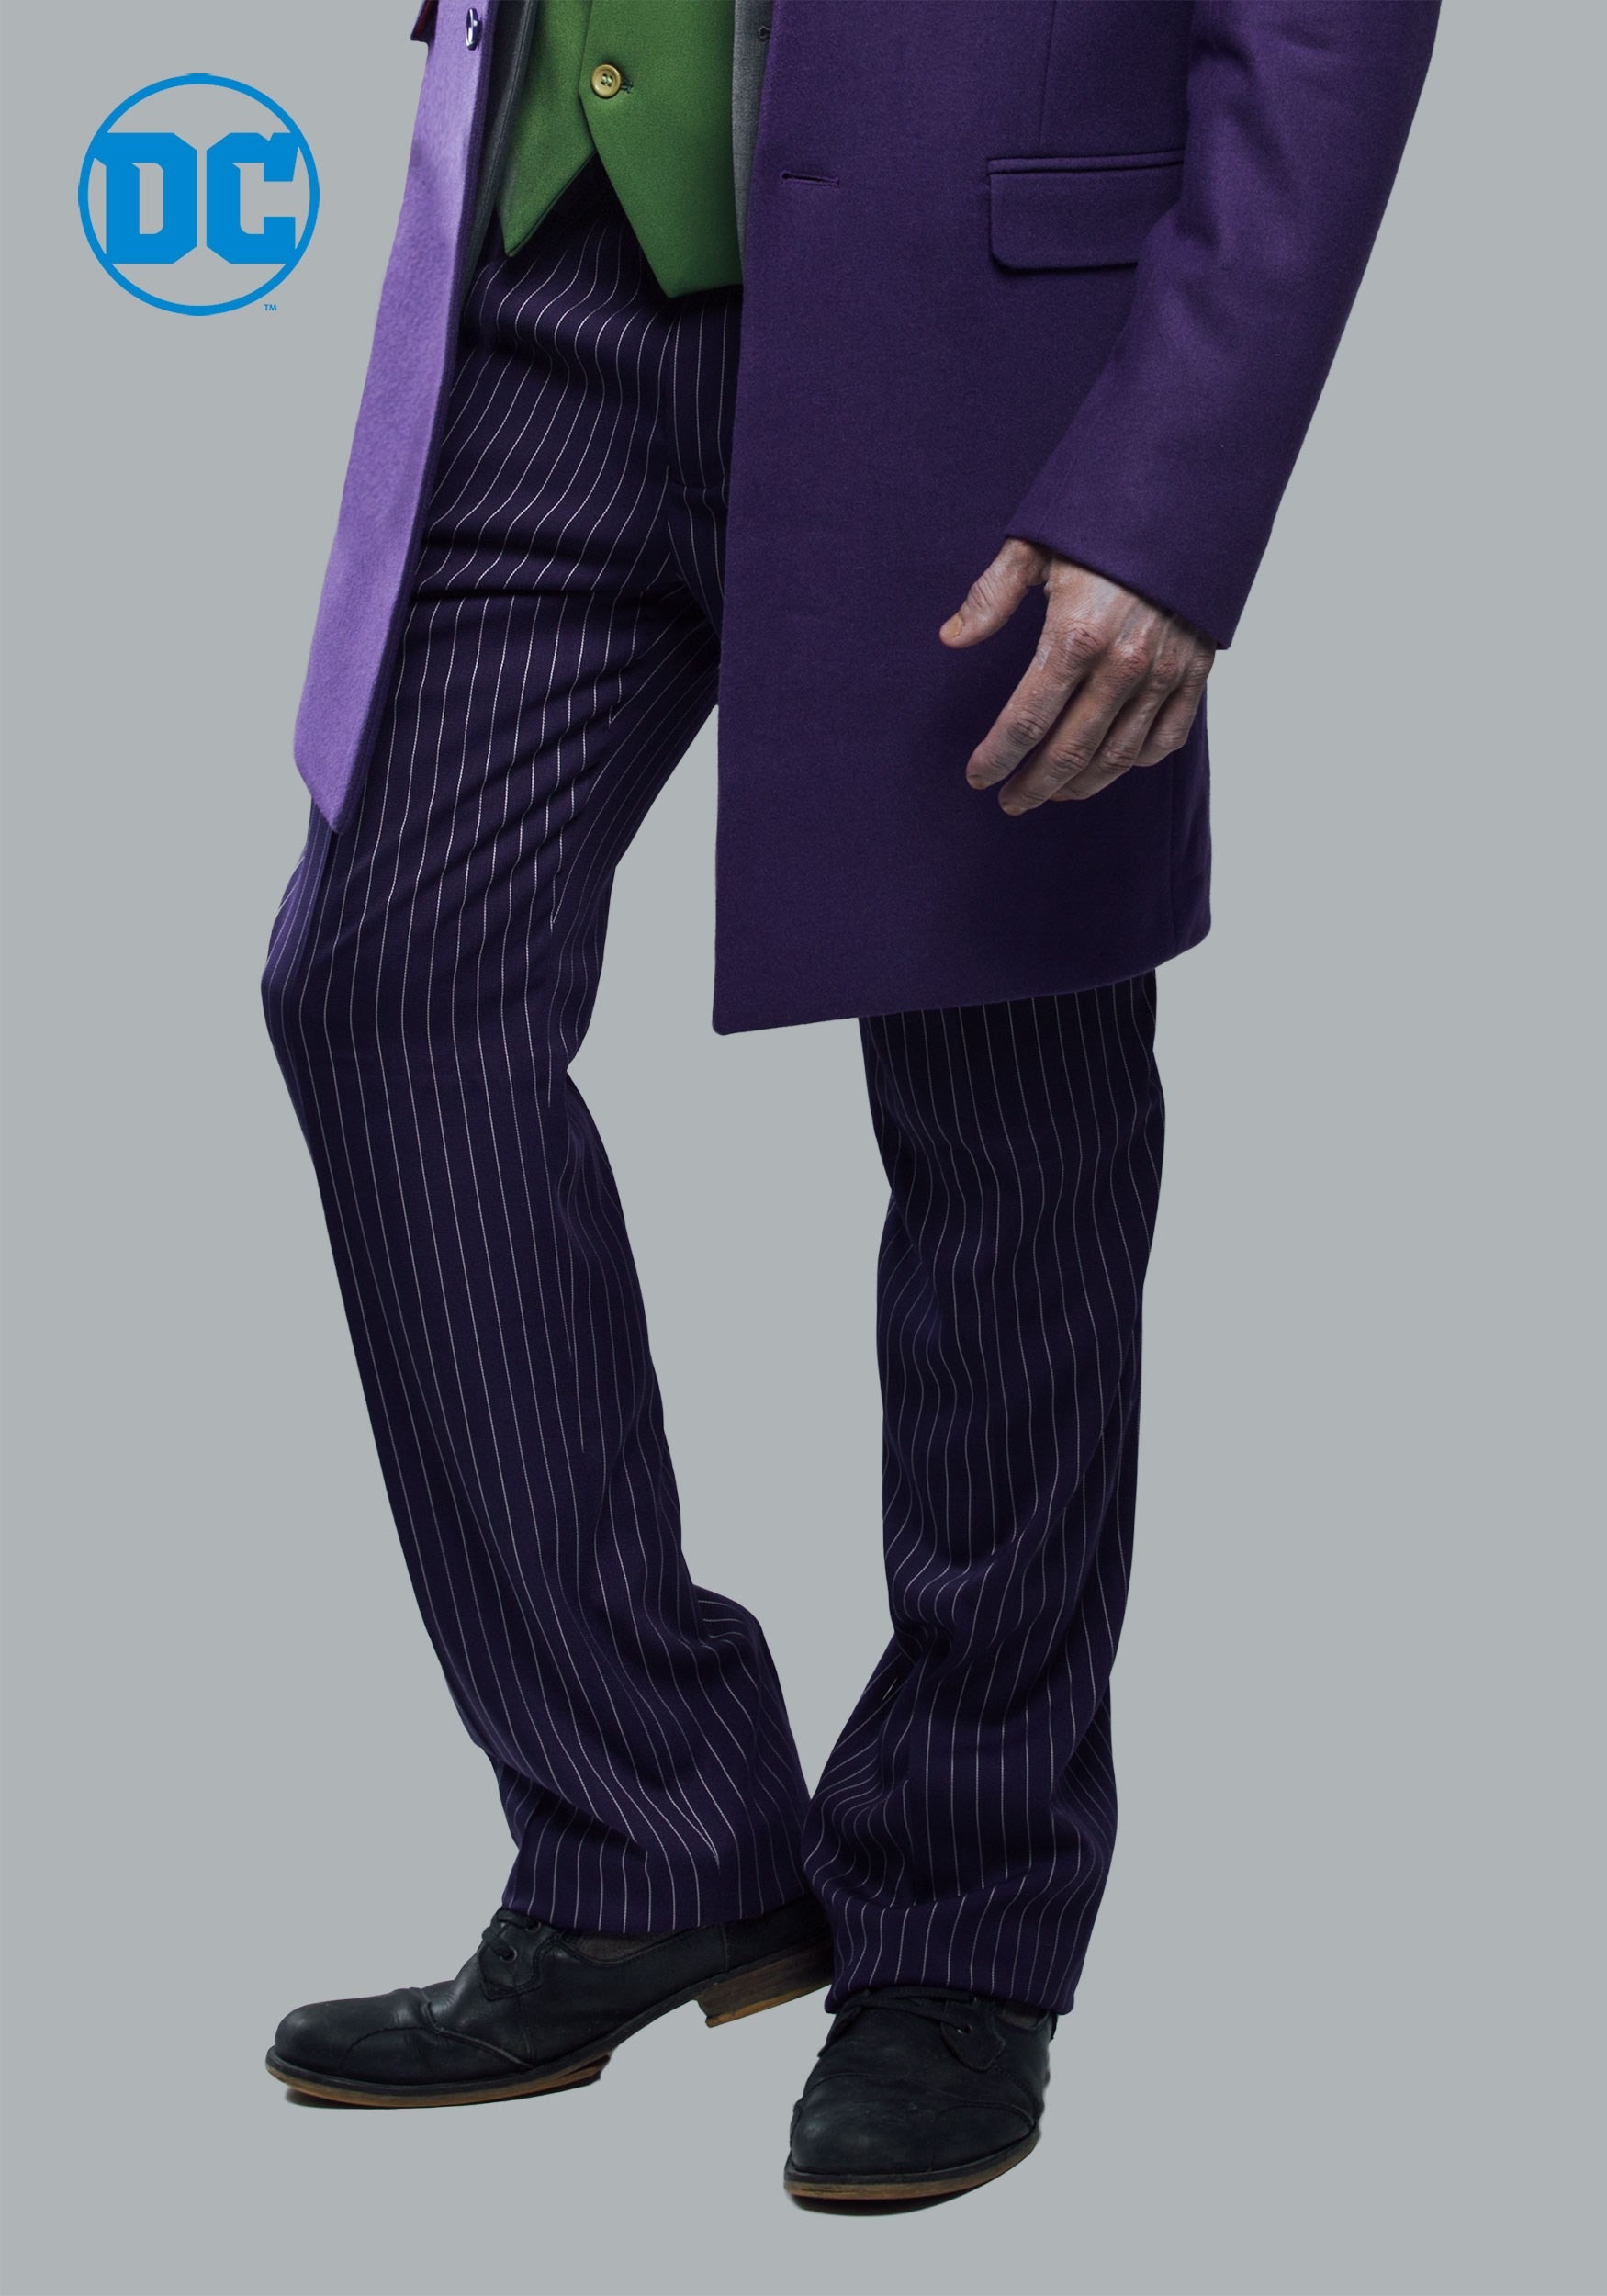 Joker Pants for Men for sale  eBay